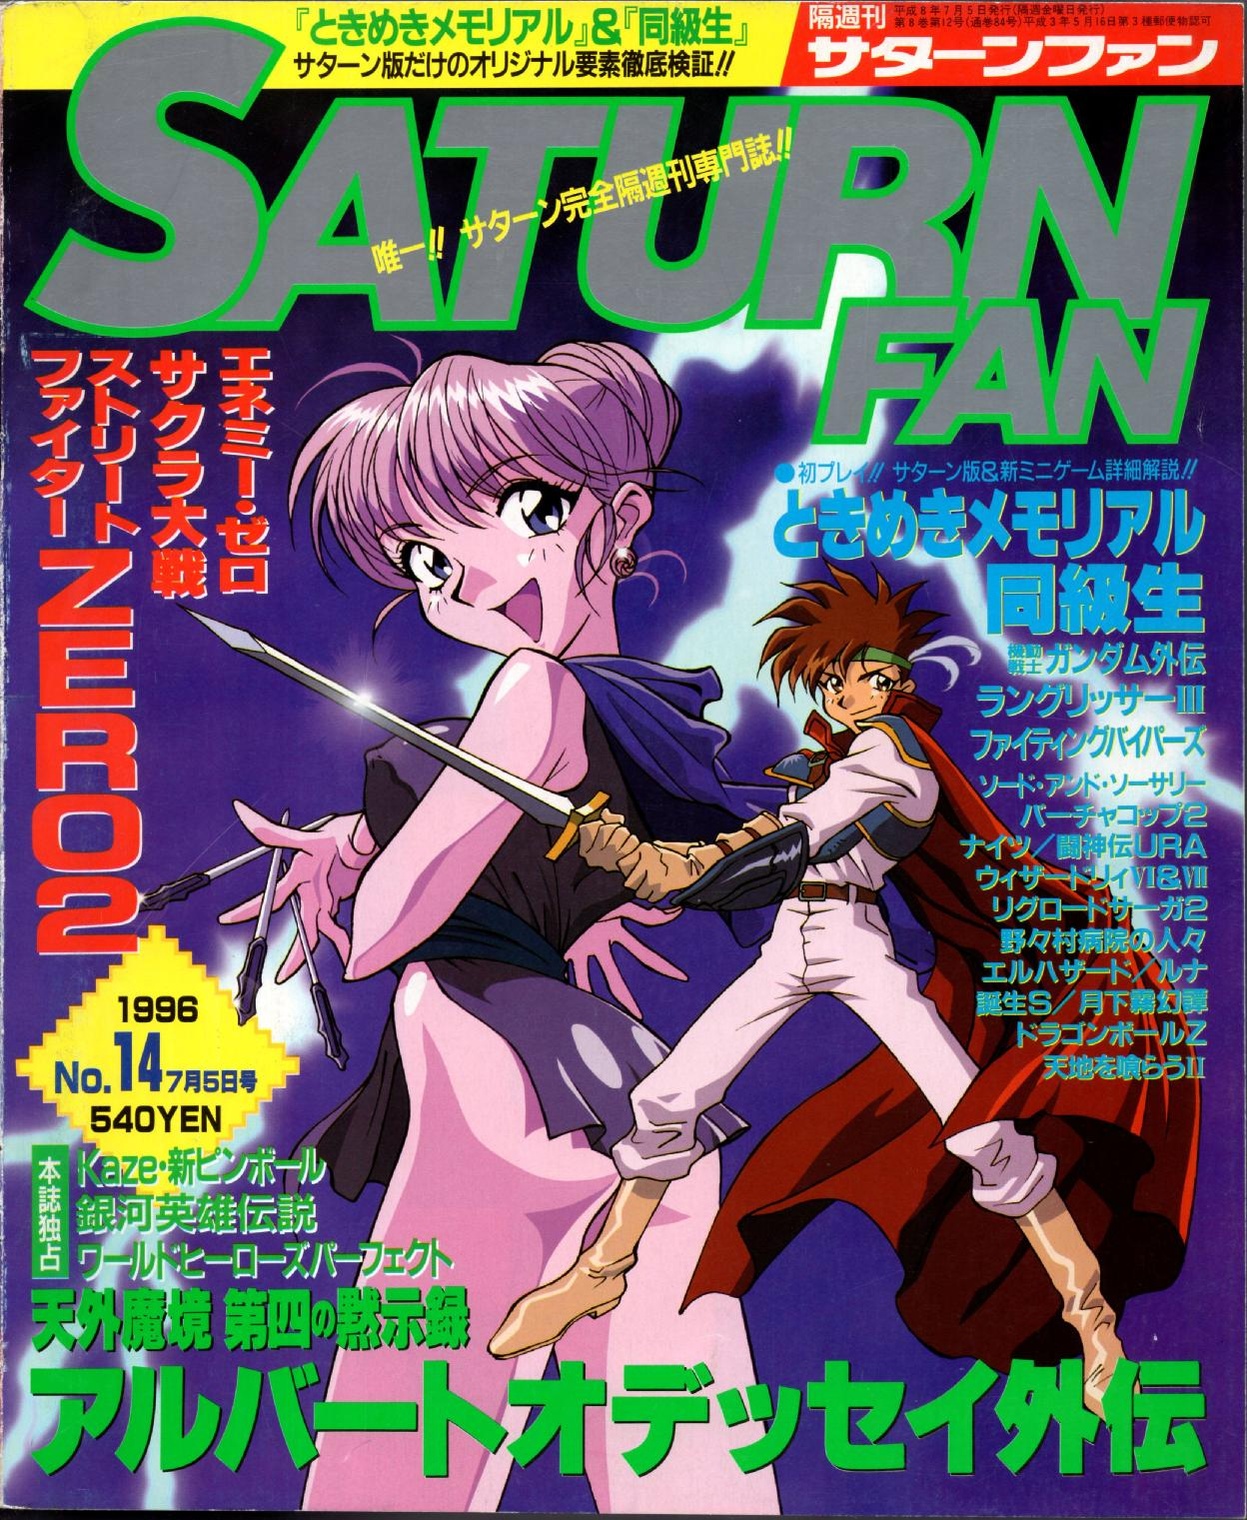 SaturnFan JP 1996-14 19960705.pdf